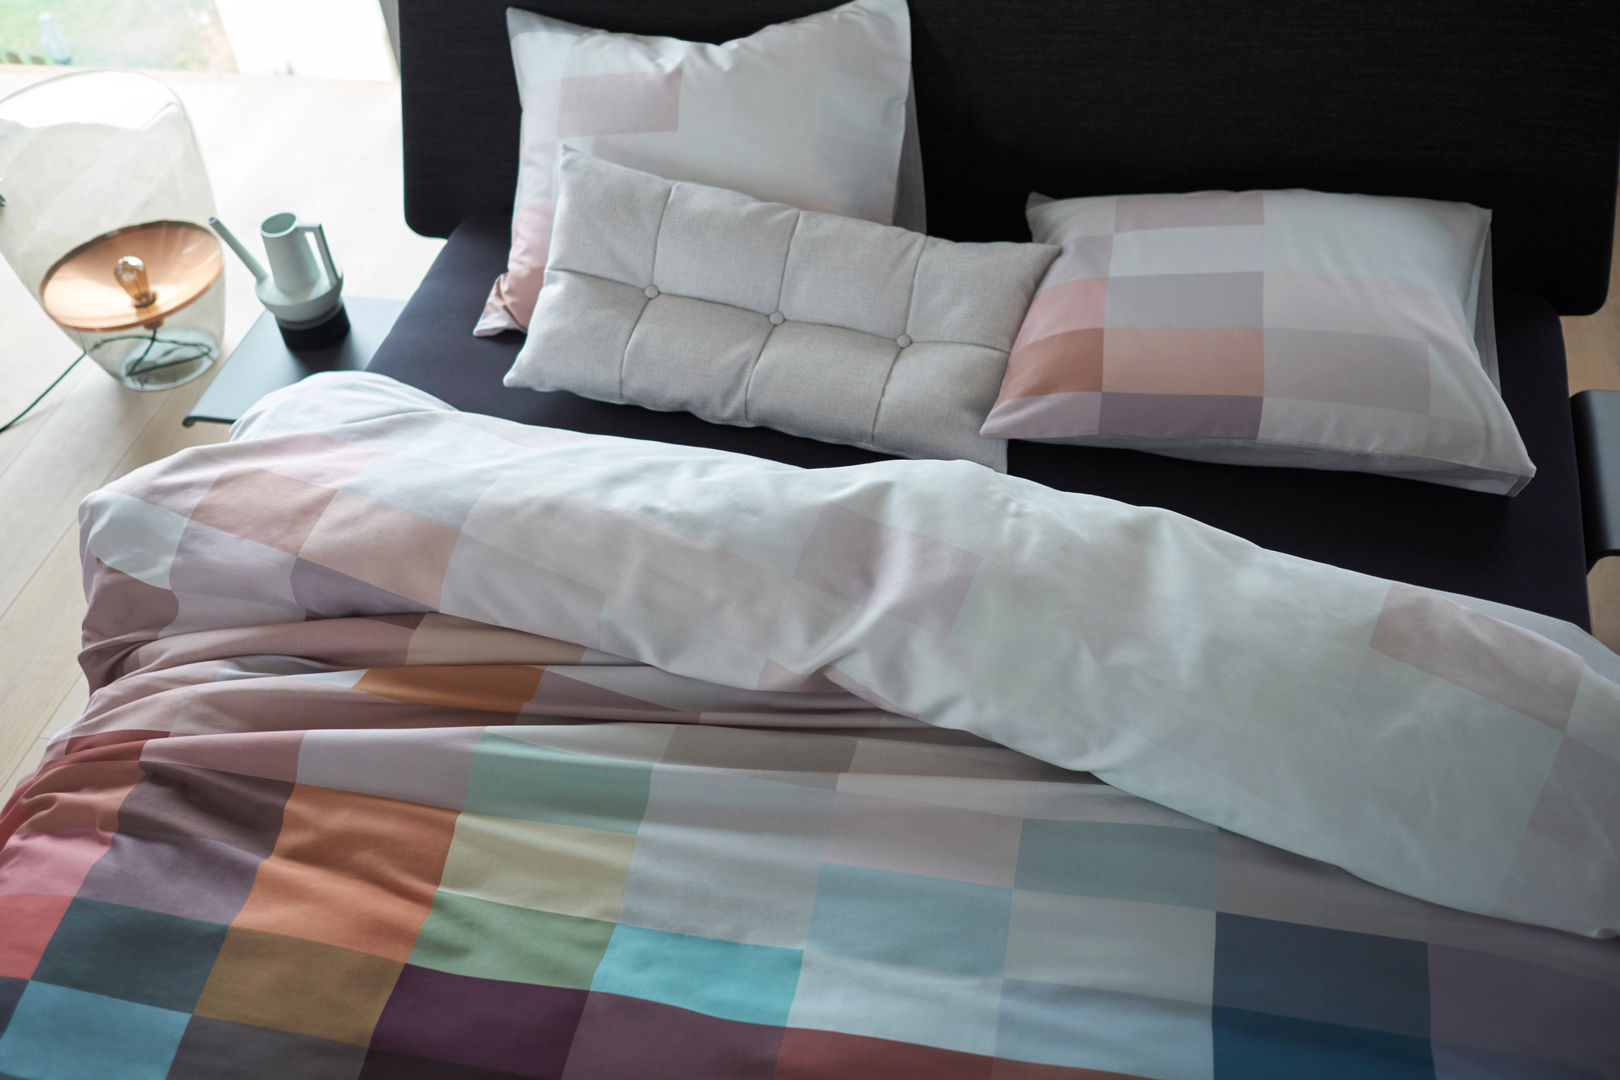 Najaarscollectie Bedtextiel , Koninklijke Auping b.v. Koninklijke Auping b.v. Modern style bedroom Textiles